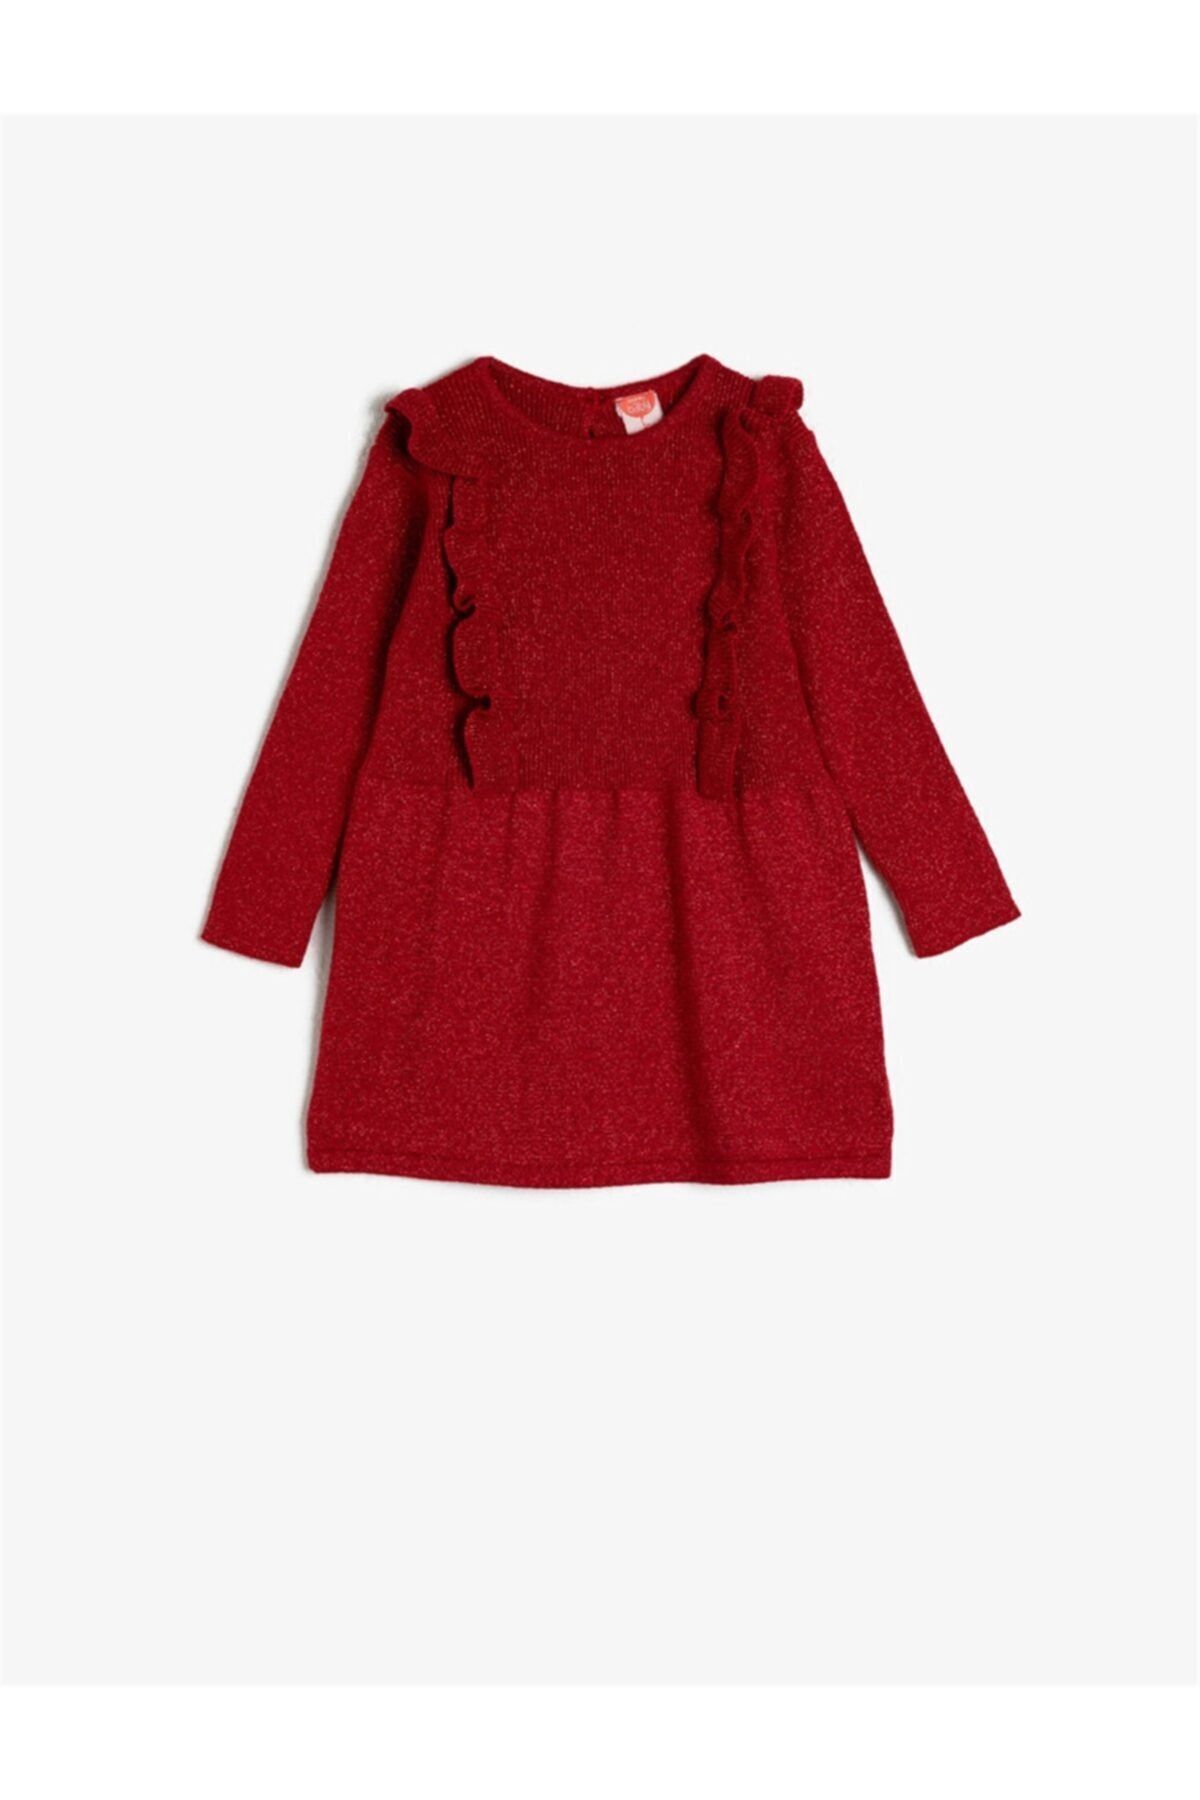 Koton Kız Bebek Kırmızı Elbise